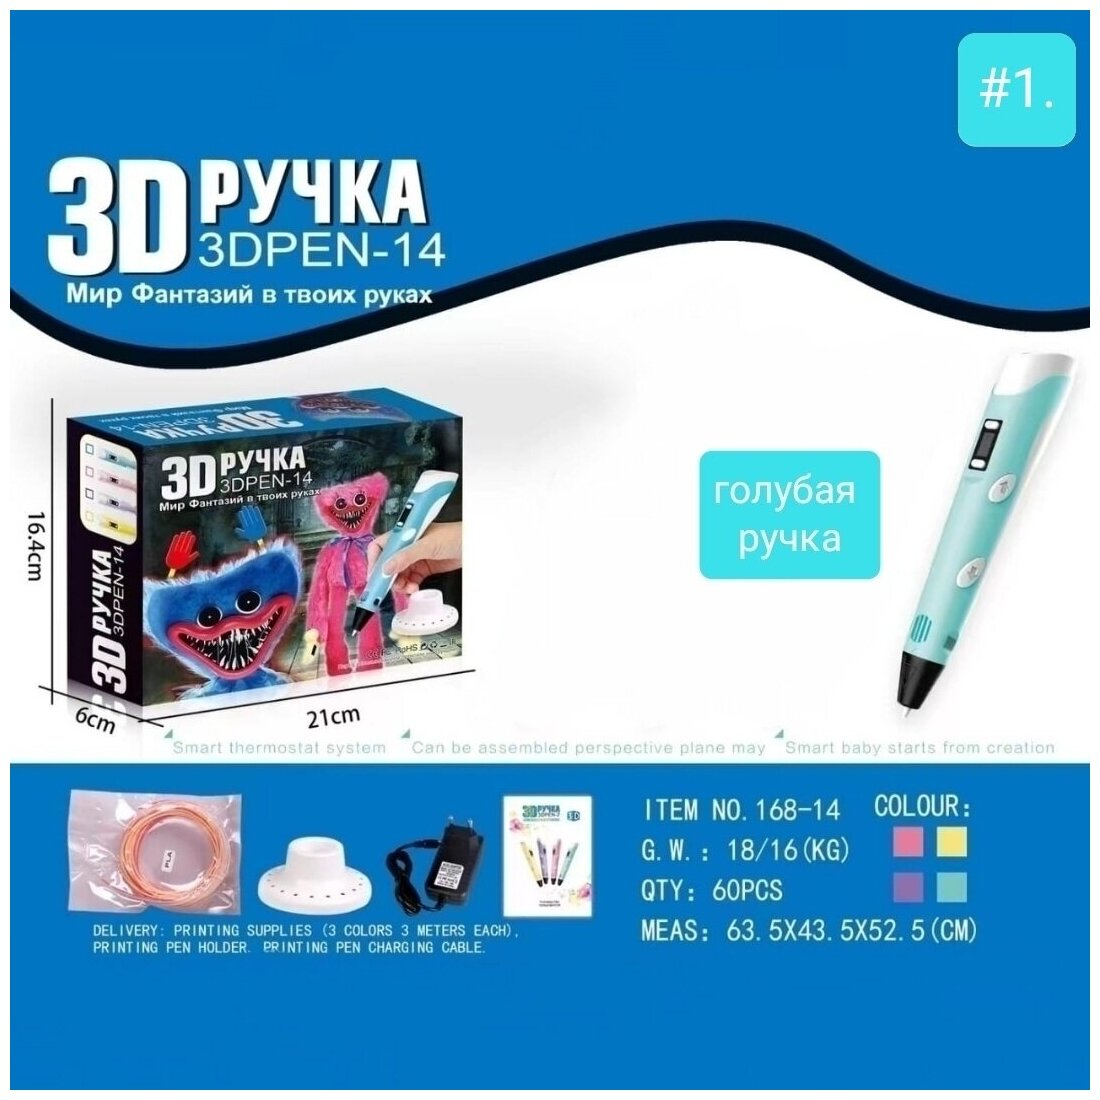 3Д ручка 3D PEN - 14 "Мир фантазий в твоих руках" Хаги-Ваги Huggy-Wuggy